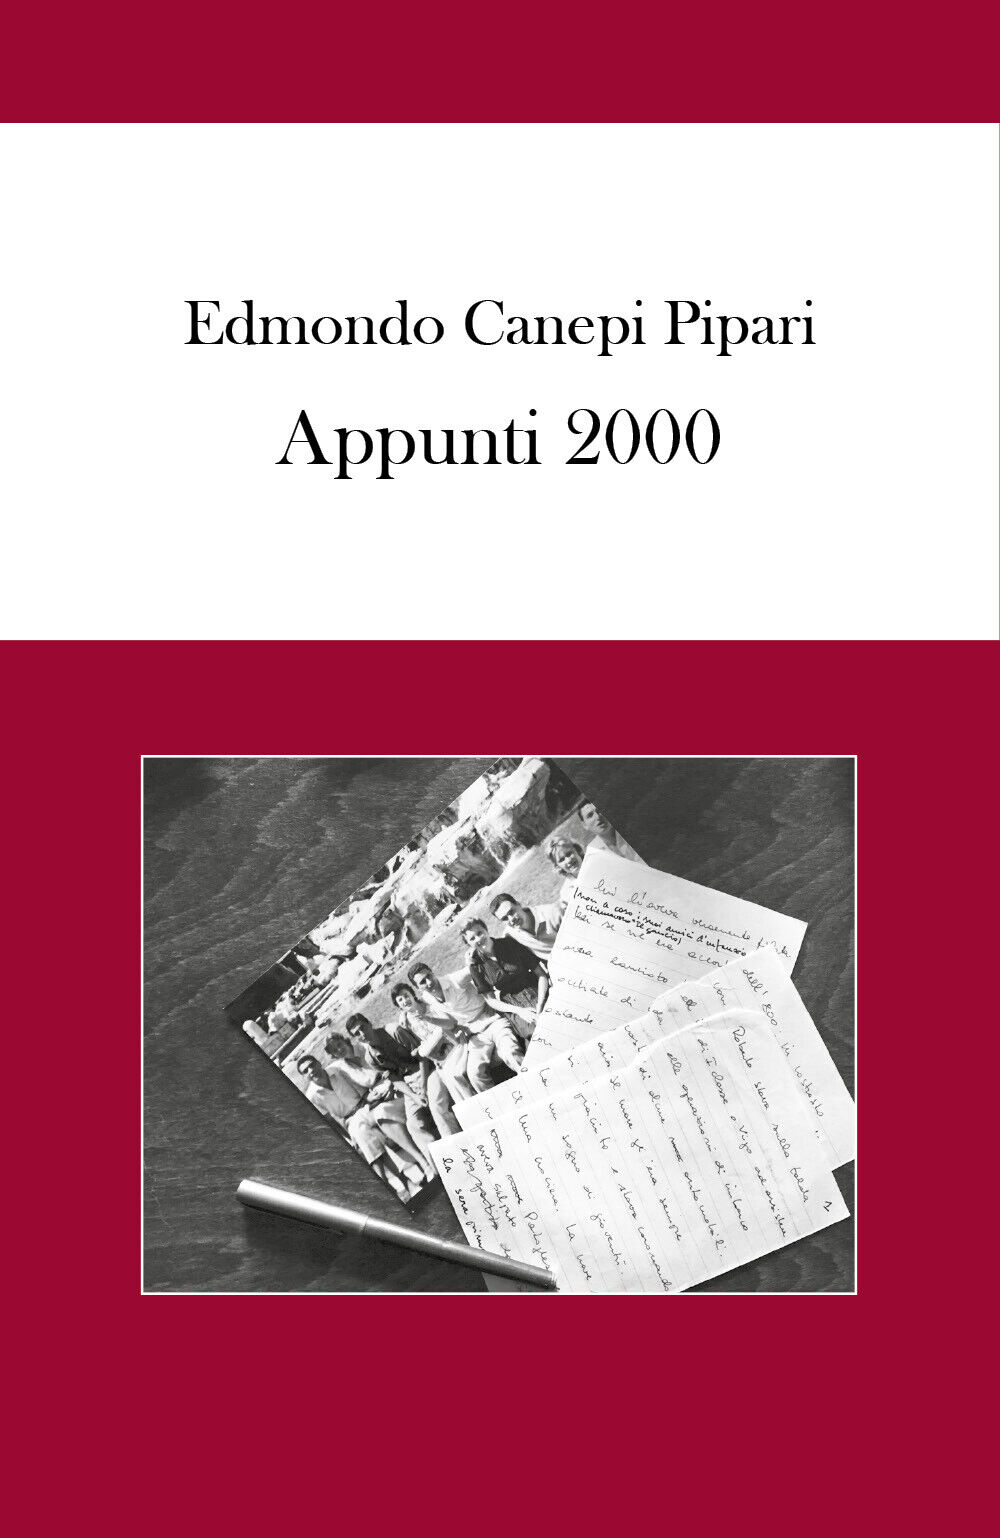 Appunti 2000  - Edmondo Canepi Pipari,  2018,  Youcanprint - ER